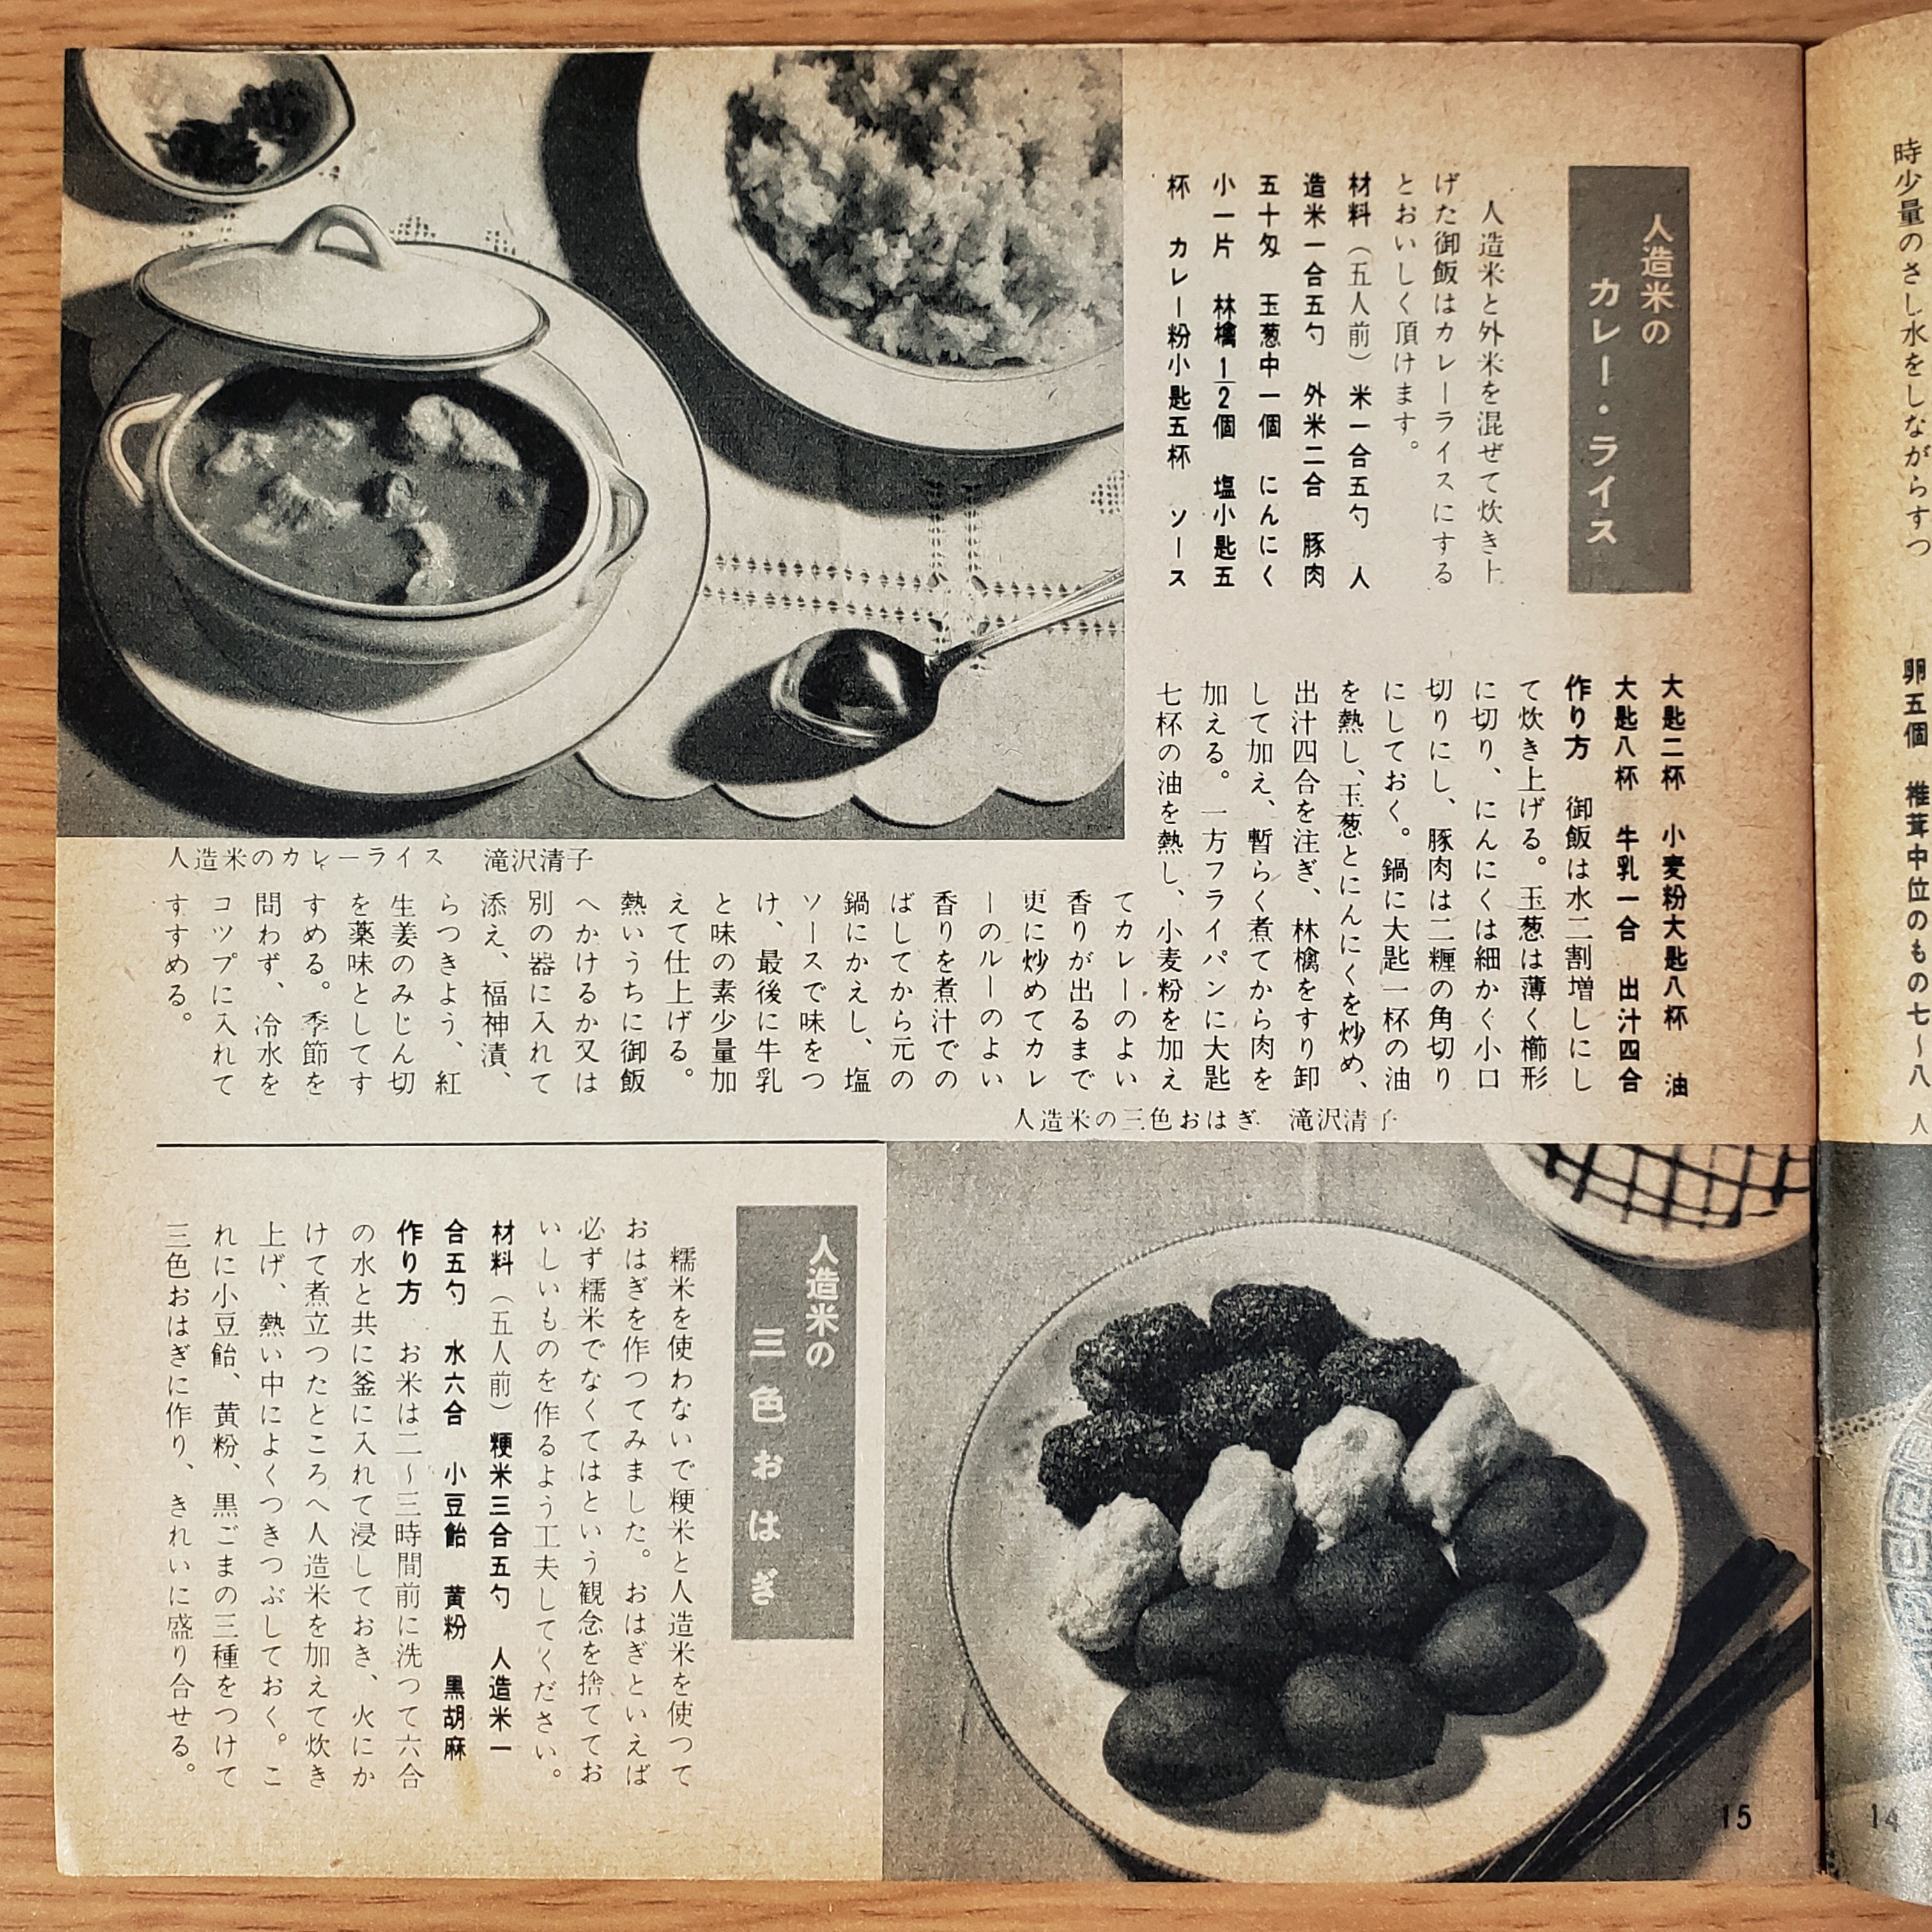 Picoroco パンと麺類料理集 昭和29年 雄鷄社版実用叢書 モノクロの料理写真だが無性に食べてみたい 米不足の時代なので 人造米を使ったレシピを紹介 パンでも麺類でもないものがどんどん紹介されていて めくるたびにページが取れる 儚い 東京